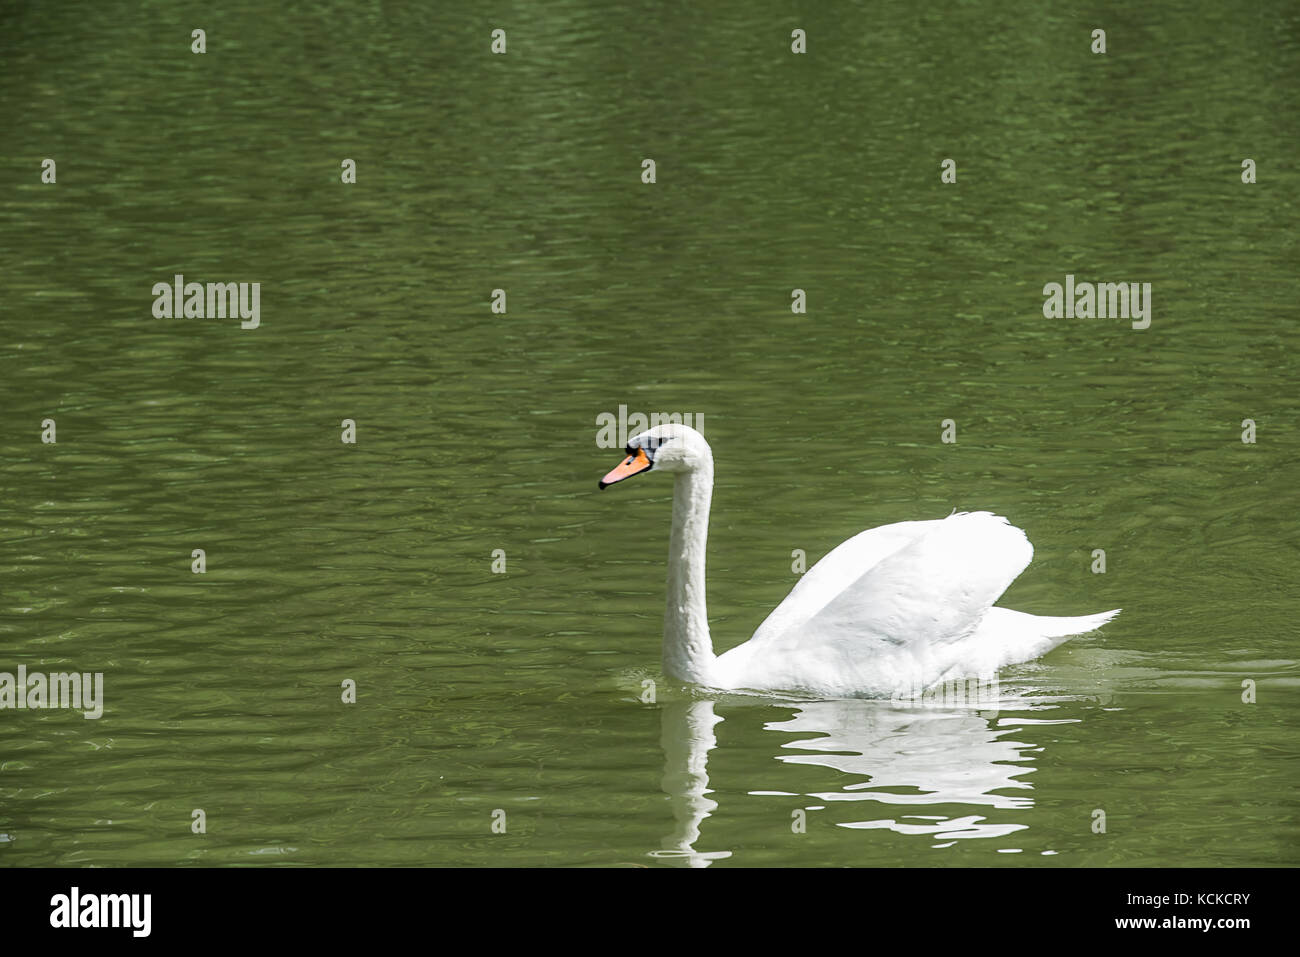 Seitenansicht des einzigen eleganten weißen Schwan, der in einem Teich oder einem See mit grünem Wasser. Wasser Grün schaut, weil das grüne Laub des Waldes (nicht visib Stockfoto